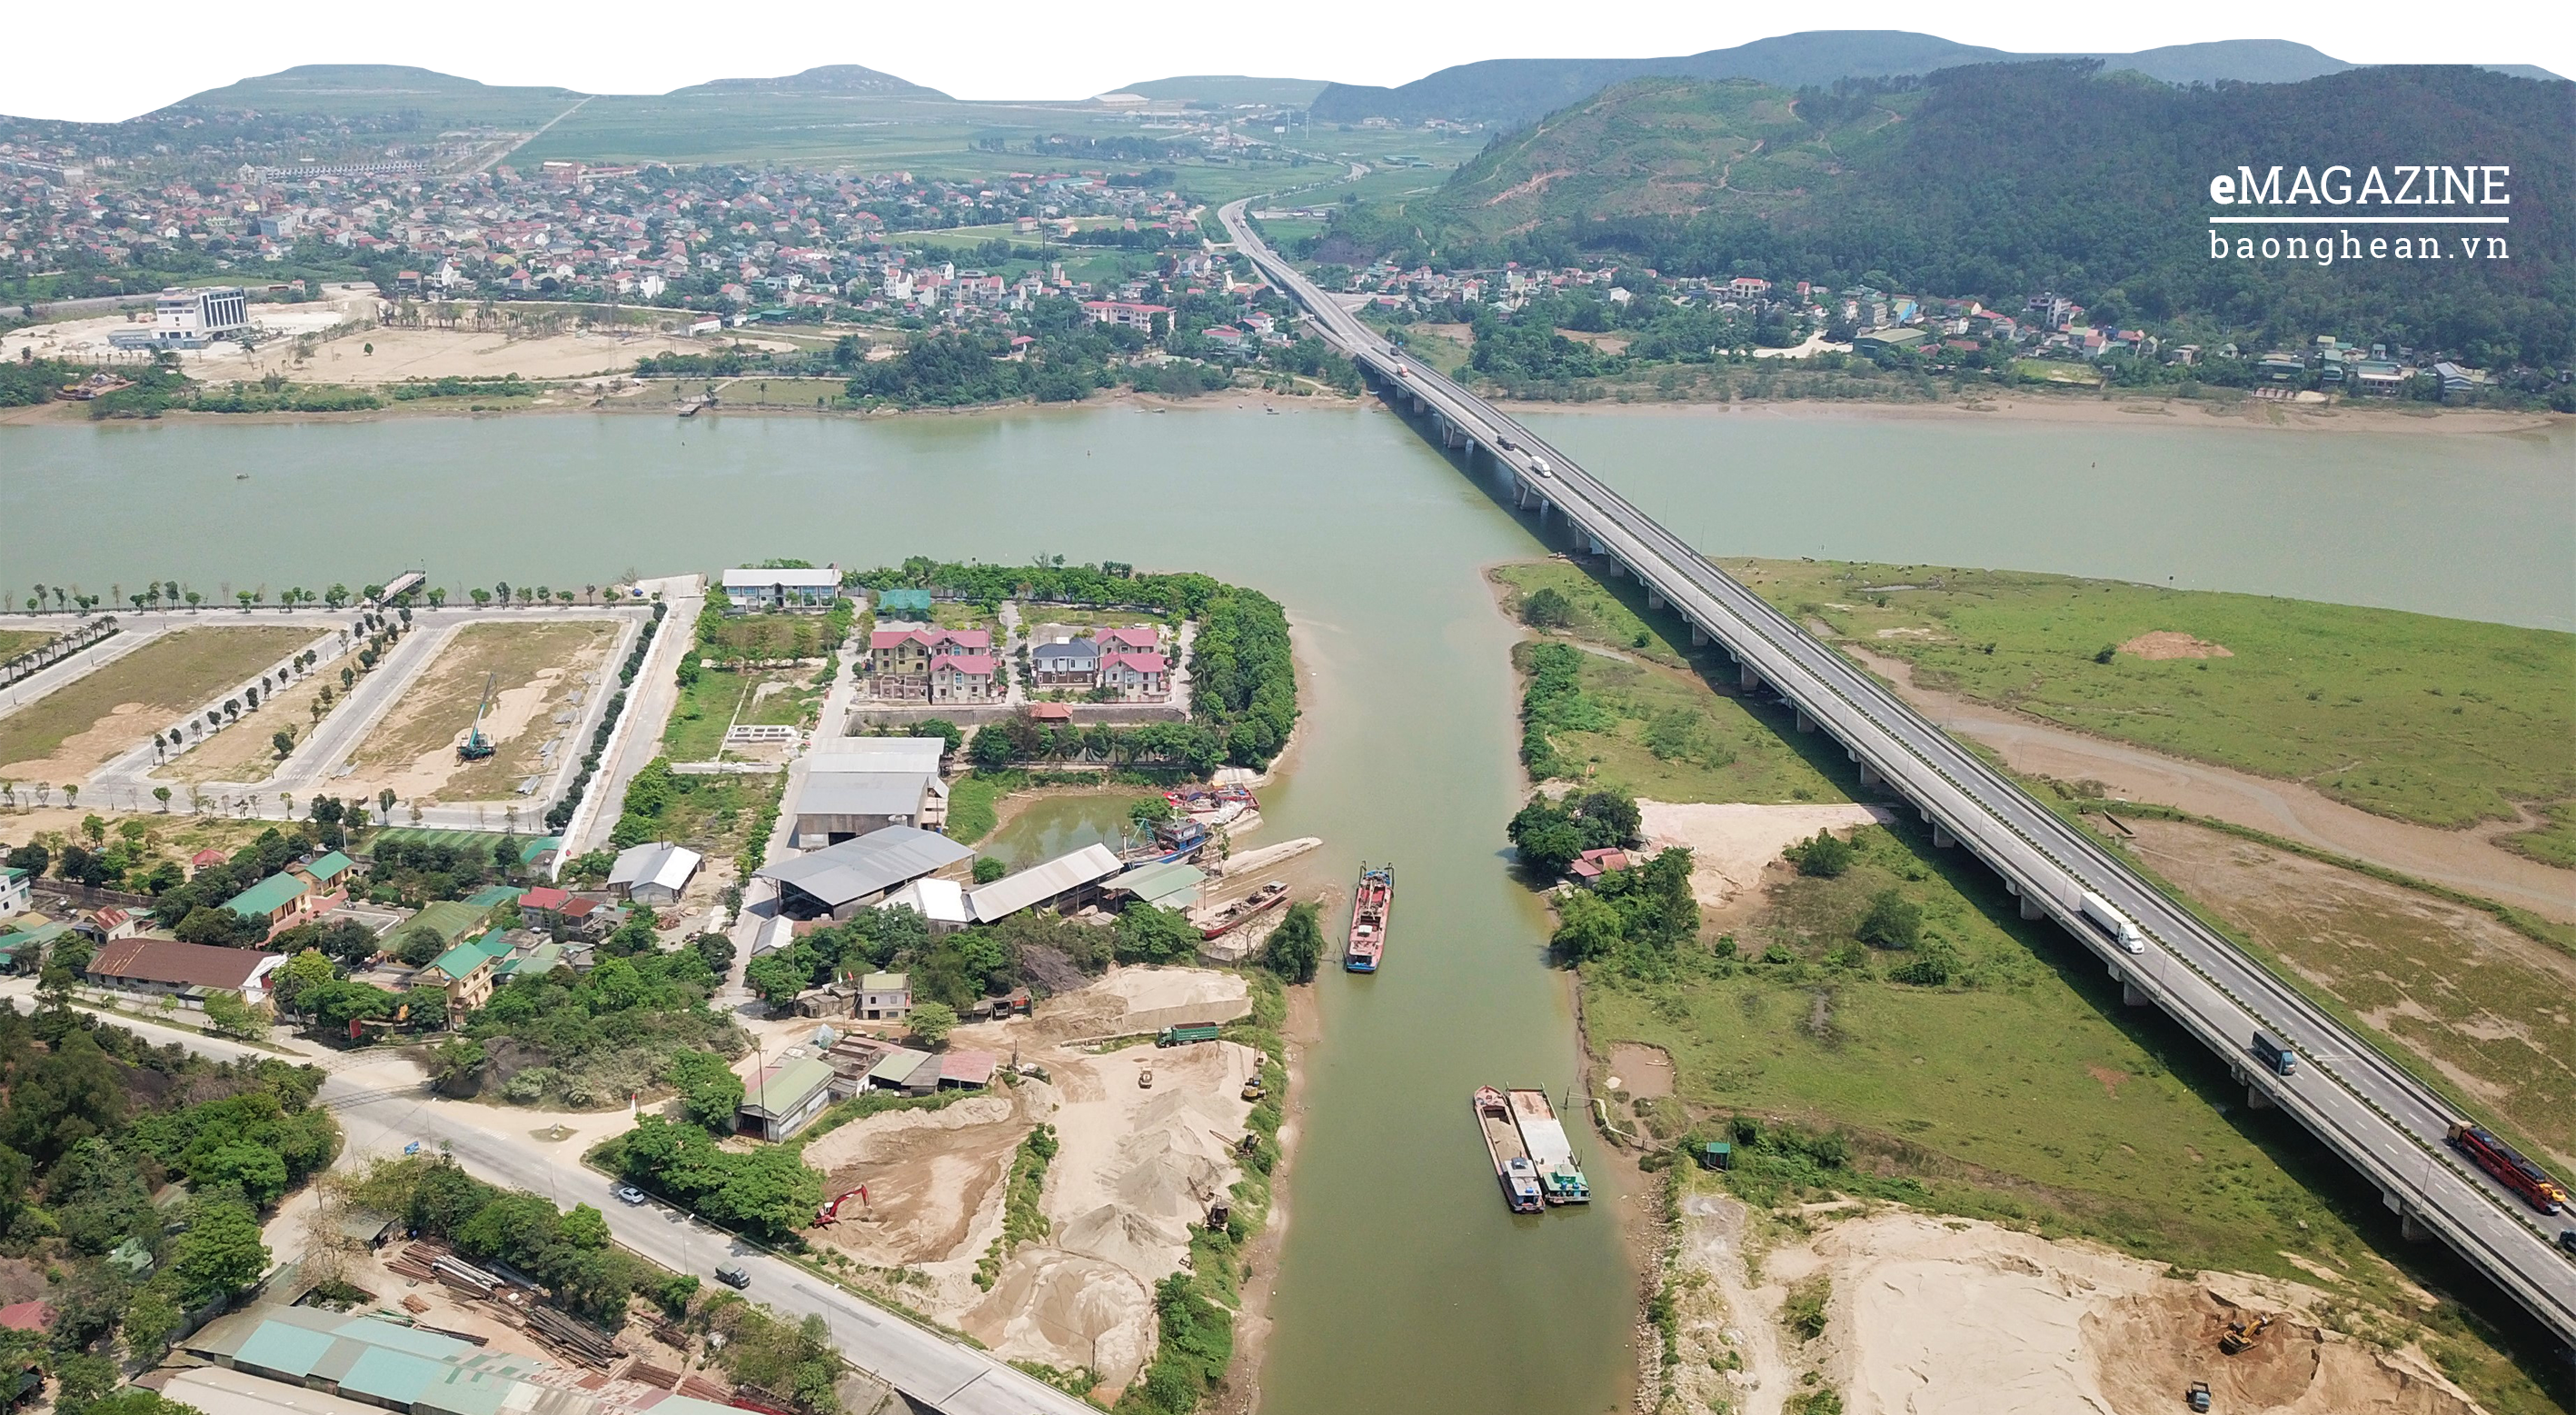 Đoạn cuối cùng của Kênh Nhà Lê trên đất Nghệ An. Nơi sông Vinh đổ vào sông Lam